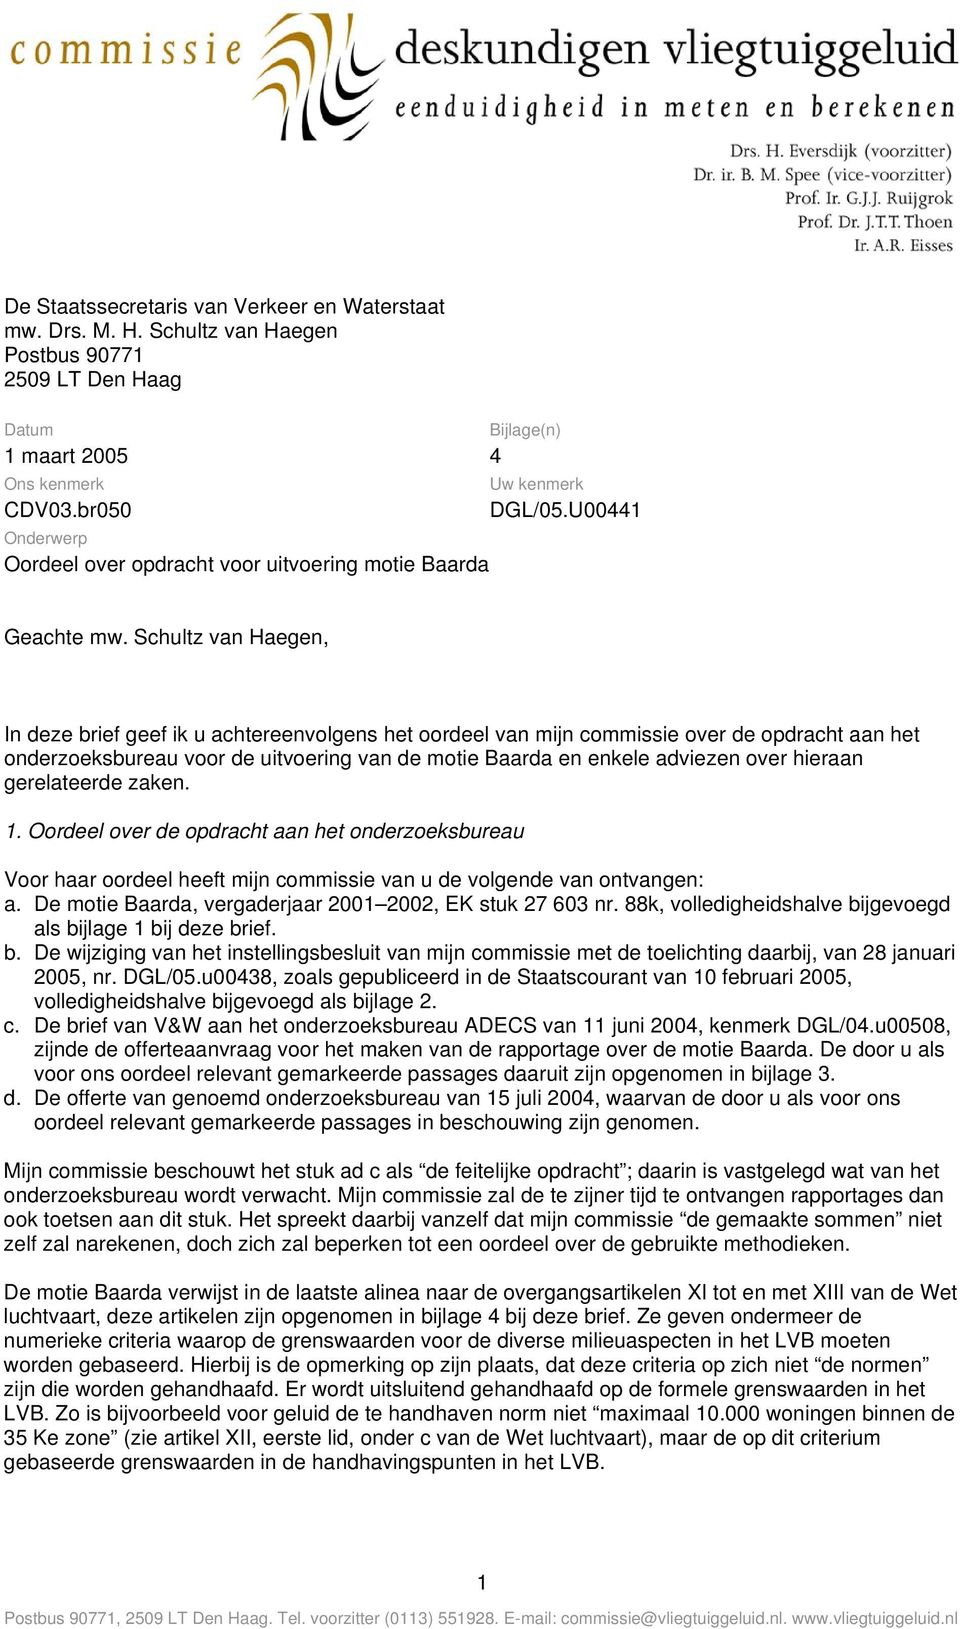 Schultz van Haegen, In deze brief geef ik u achtereenvolgens het oordeel van mijn commissie over de opdracht aan het onderzoeksbureau voor de uitvoering van de motie Baarda en enkele adviezen over